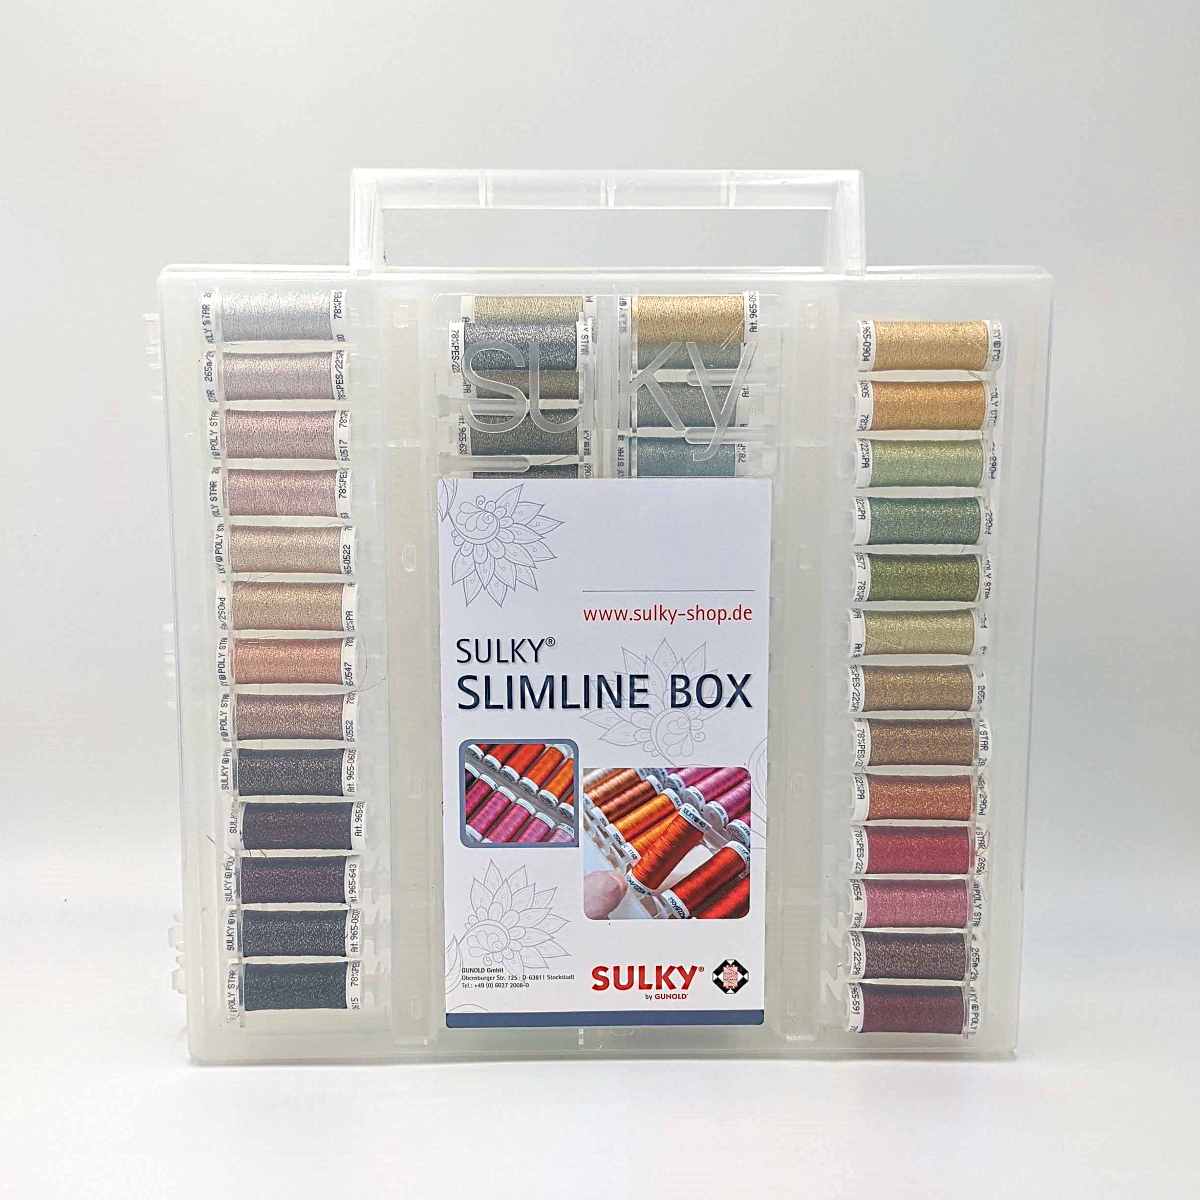 SULKY ORIGINAL SLIMLINE BOX - Poly Sparkle
30 Dream Pack